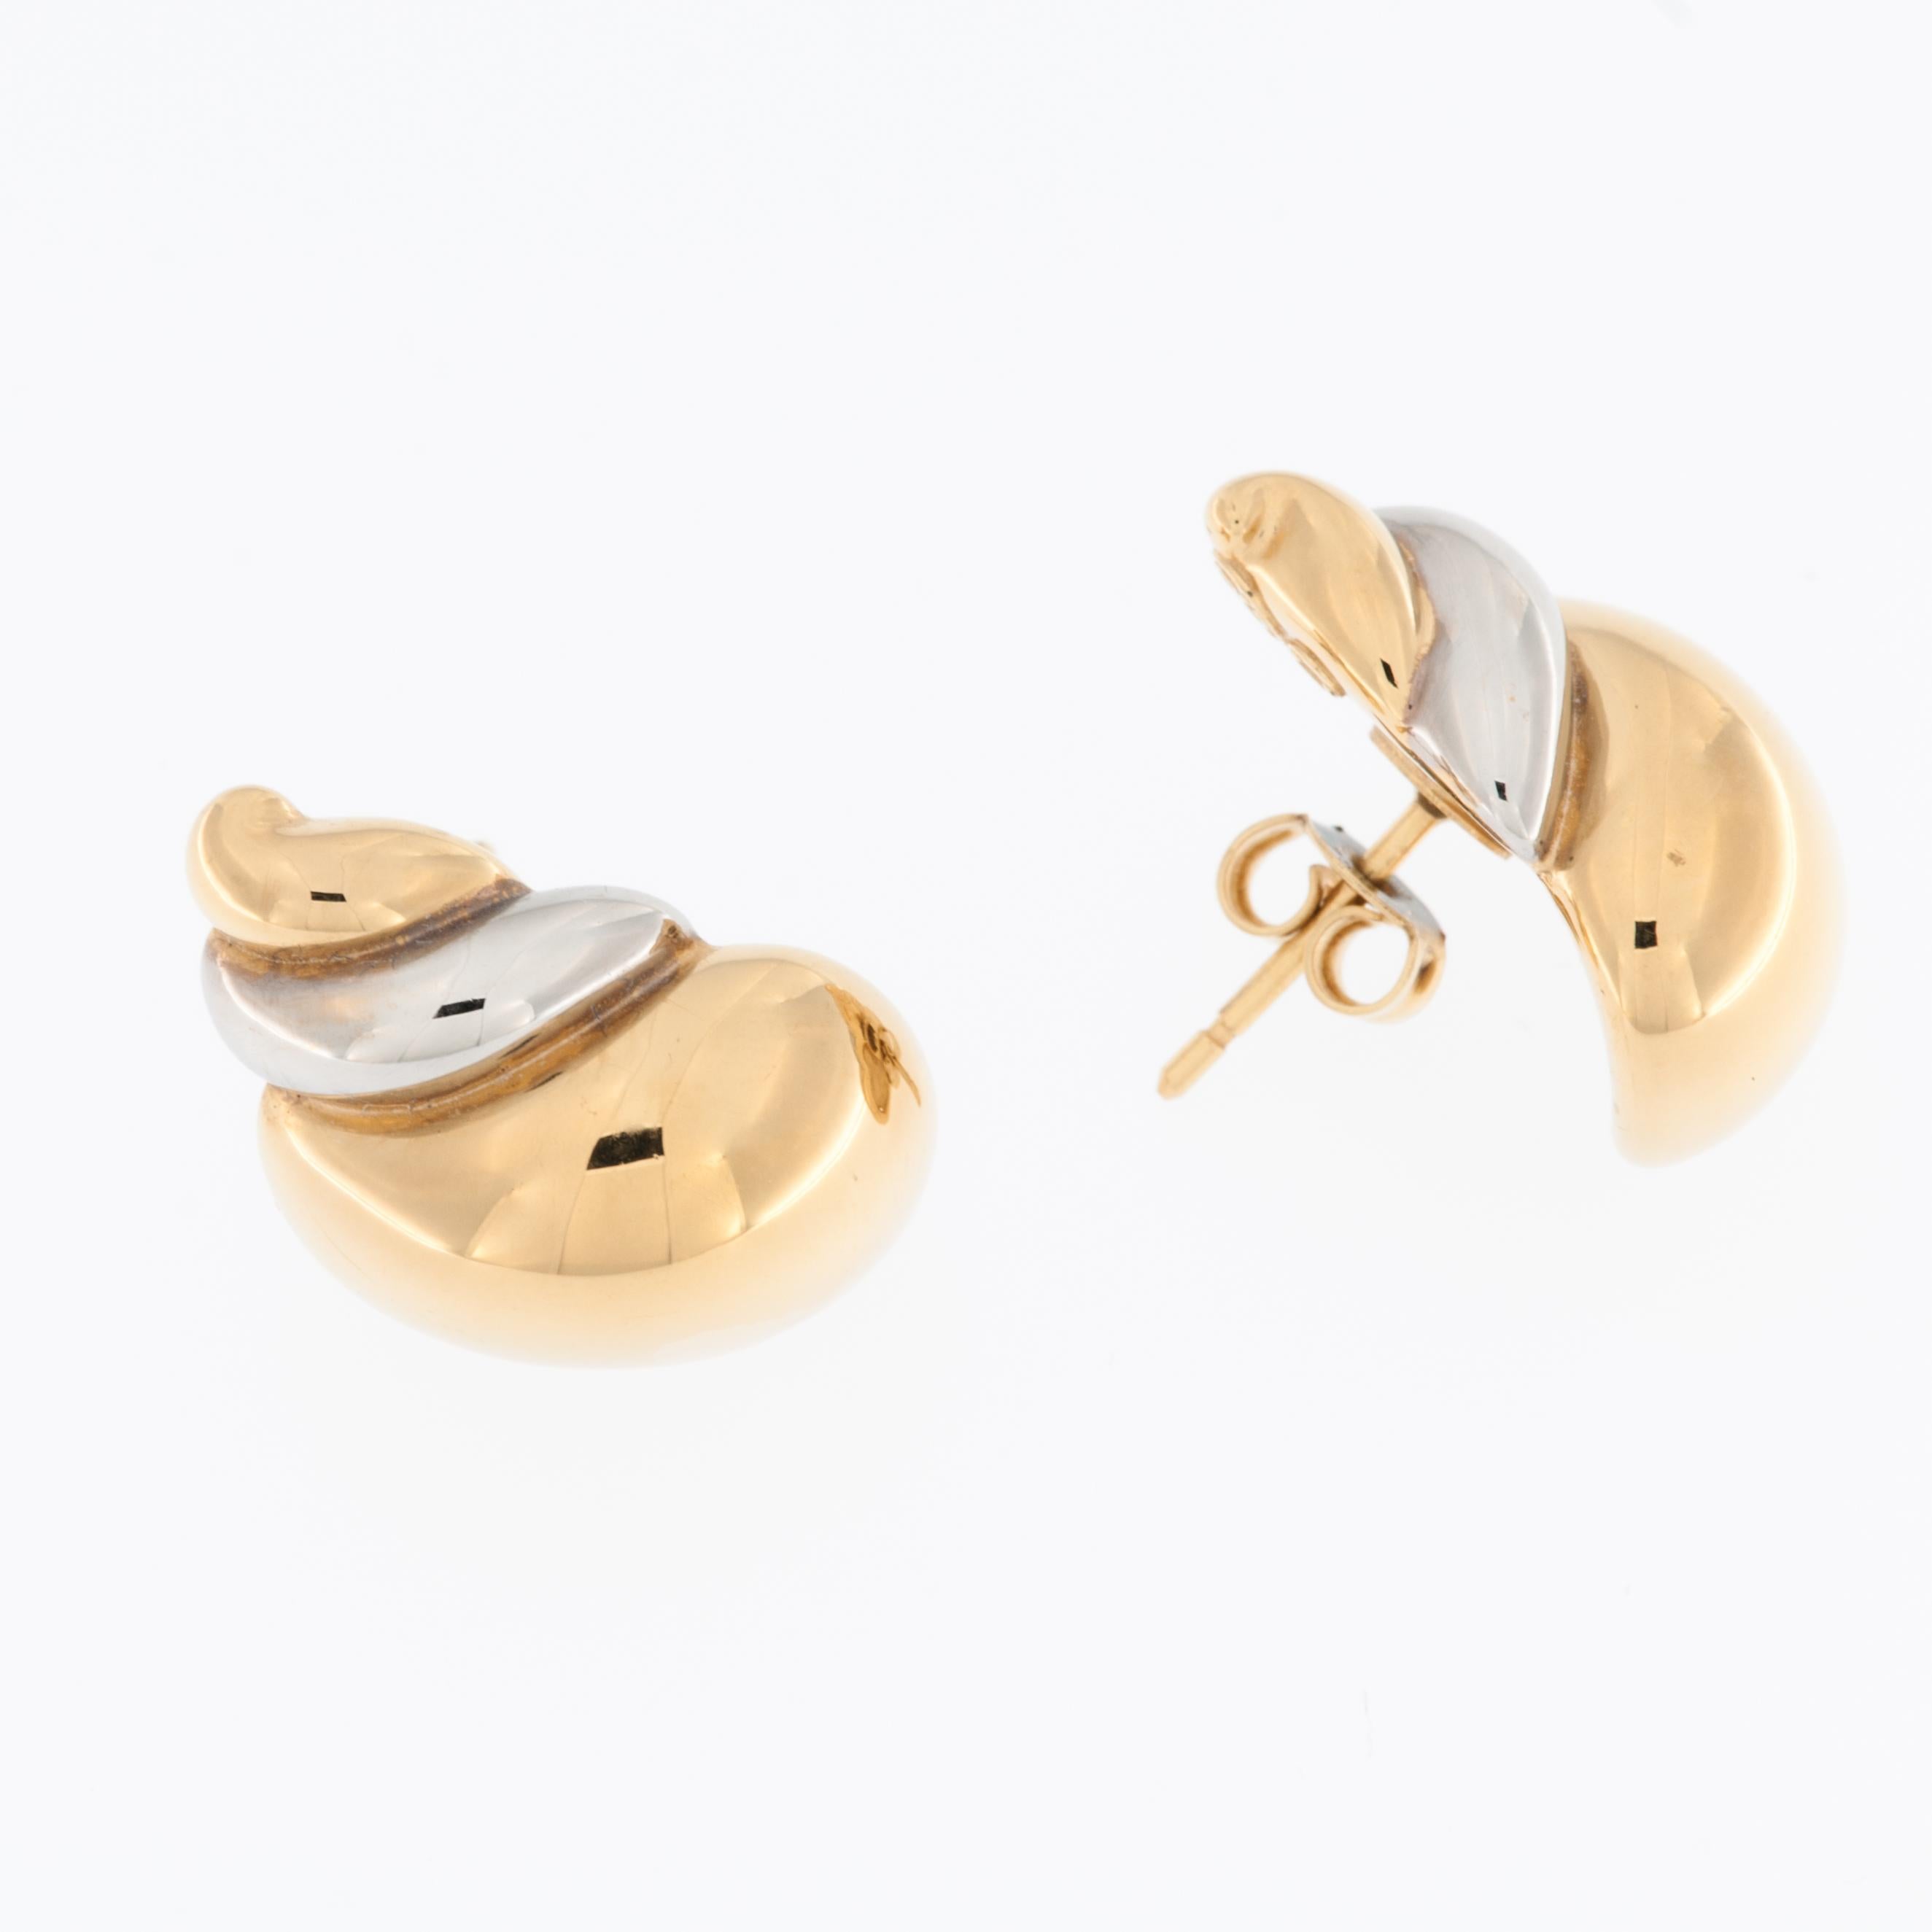 Diese italienischen Muschelohrringe sind ein einzigartiger und exquisiter Ausdruck von Handwerkskunst und Design. Diese Ohrringe sind aus einer Kombination von 18-karätigem Gelb- und Weißgold gefertigt und stellen eine Mischung aus zwei luxuriösen